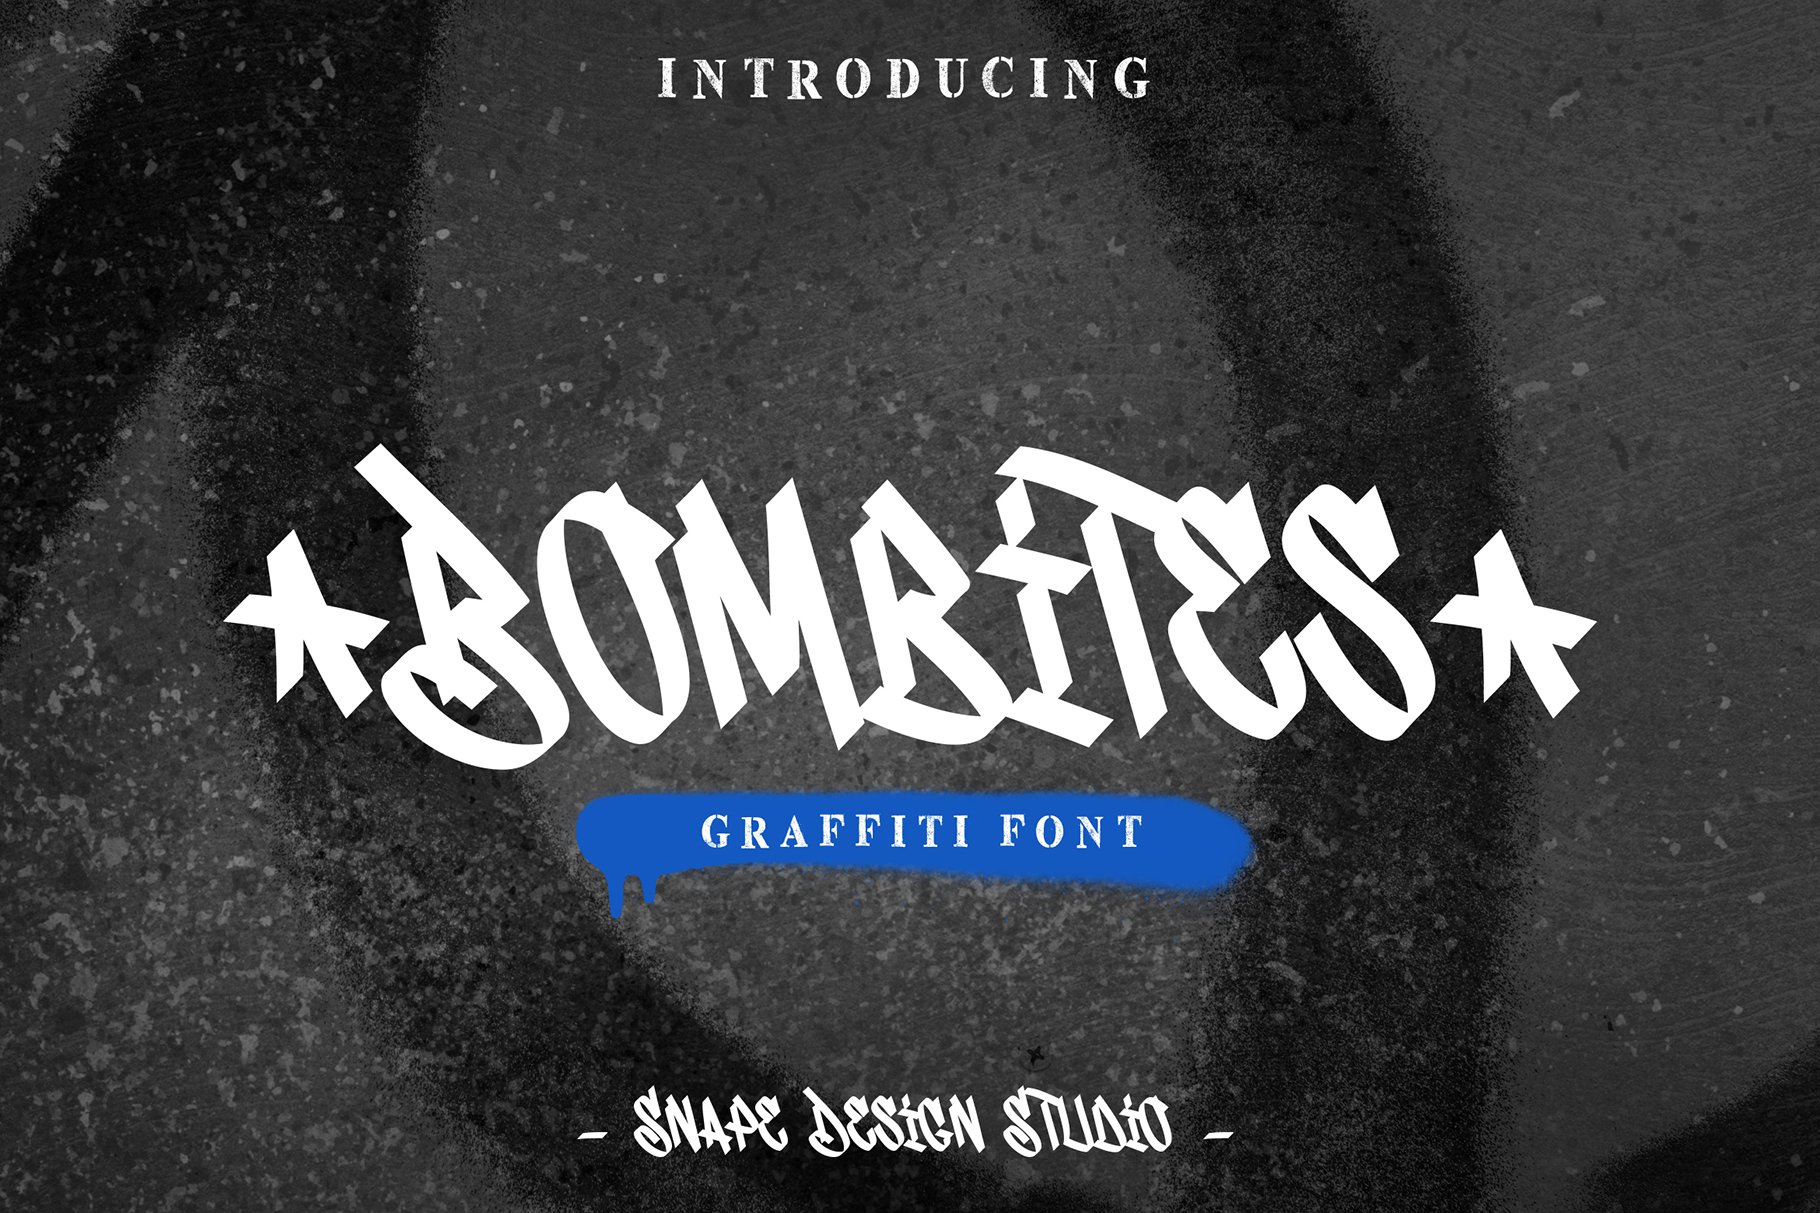 Bombites - Graffiti Font cover image.